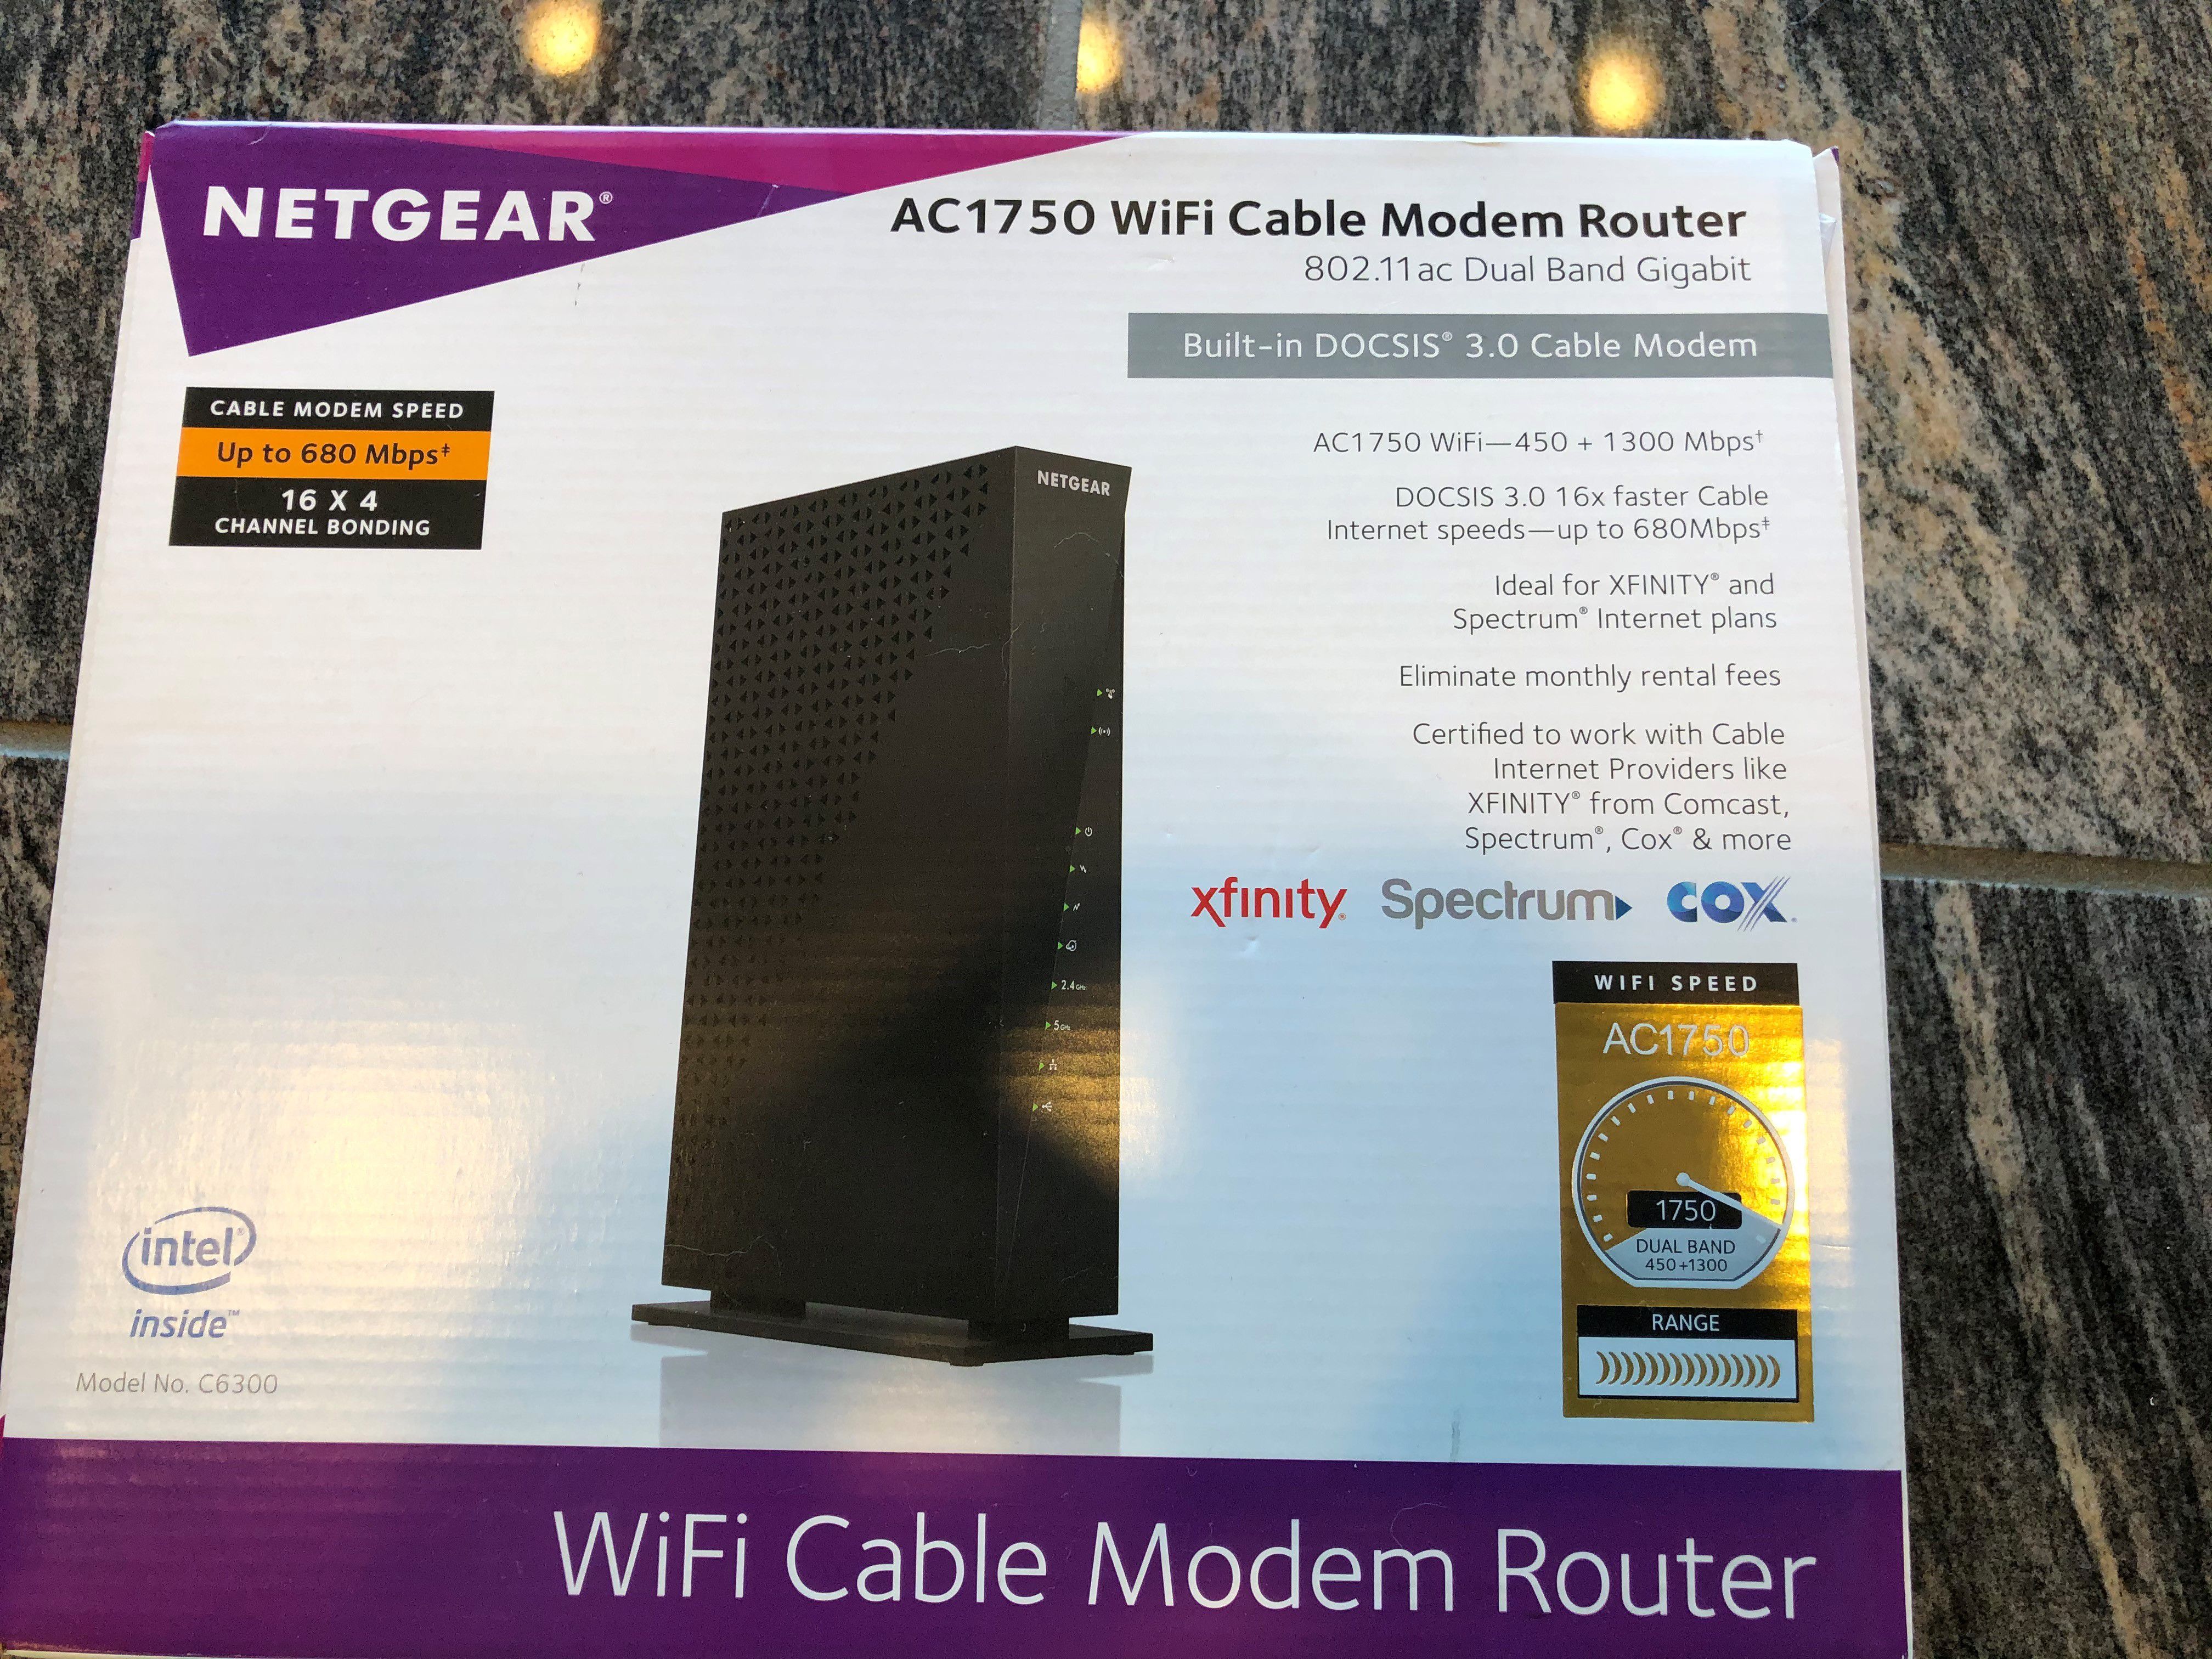 NETGEAR AC1750 C6300 WiFi Cable Modem Router